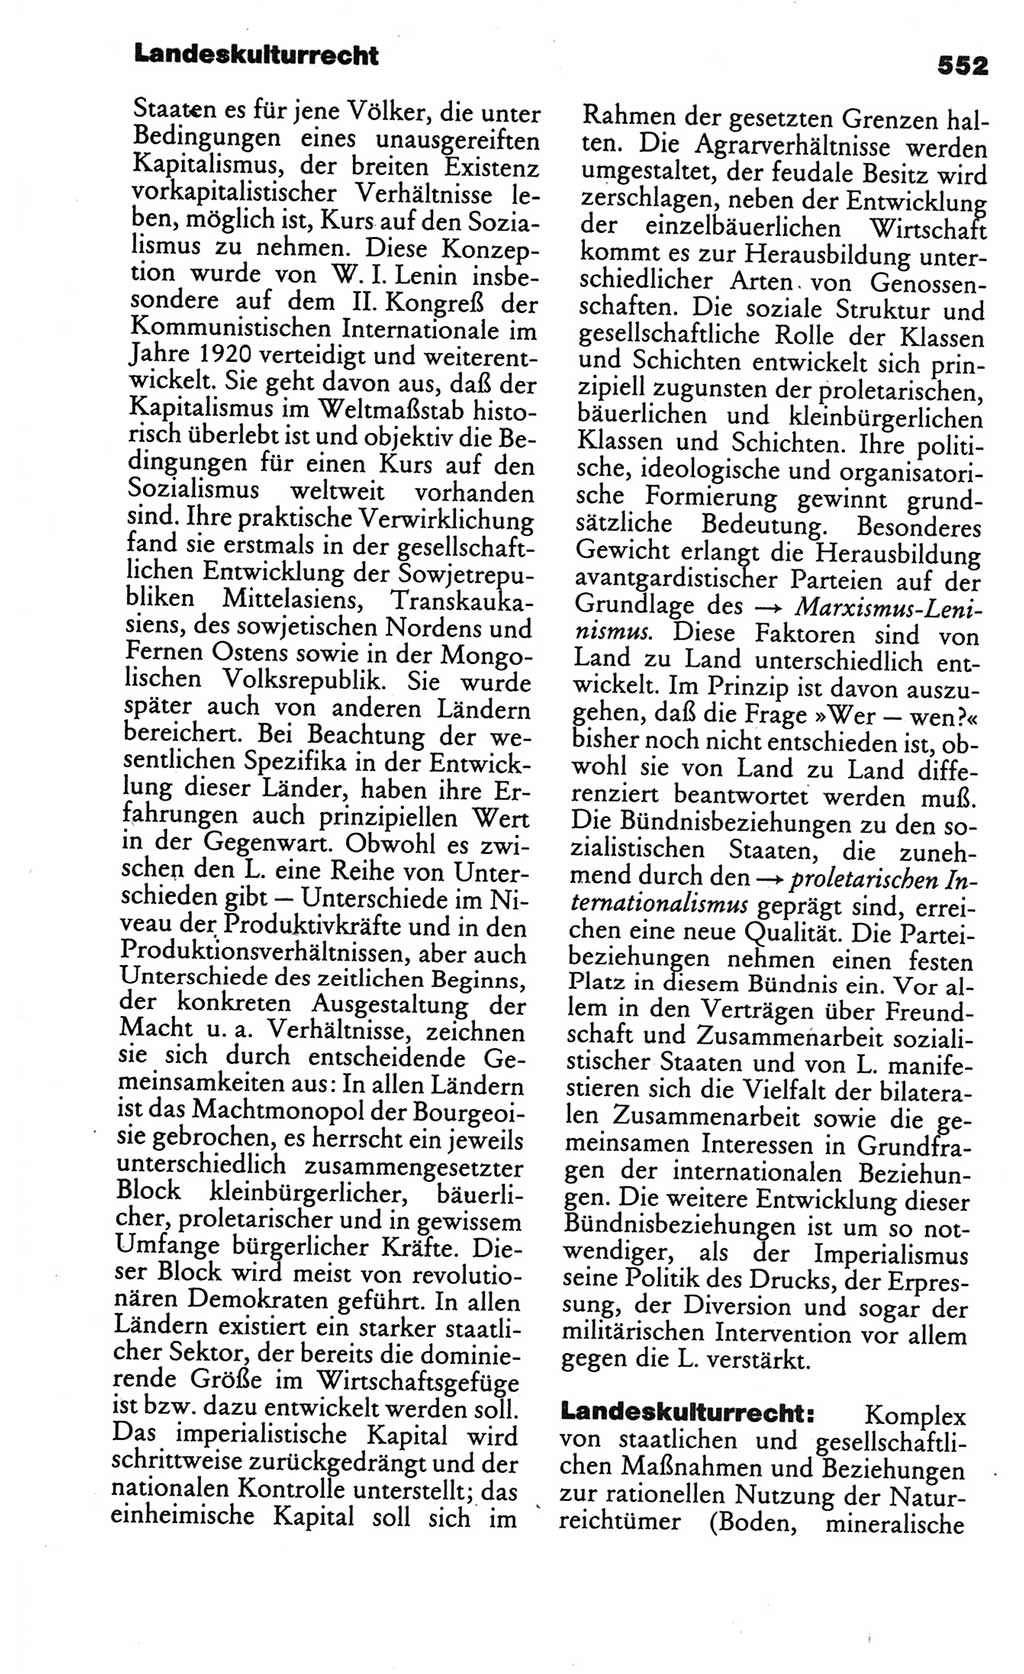 Kleines politisches Wörterbuch [Deutsche Demokratische Republik (DDR)] 1986, Seite 552 (Kl. pol. Wb. DDR 1986, S. 552)